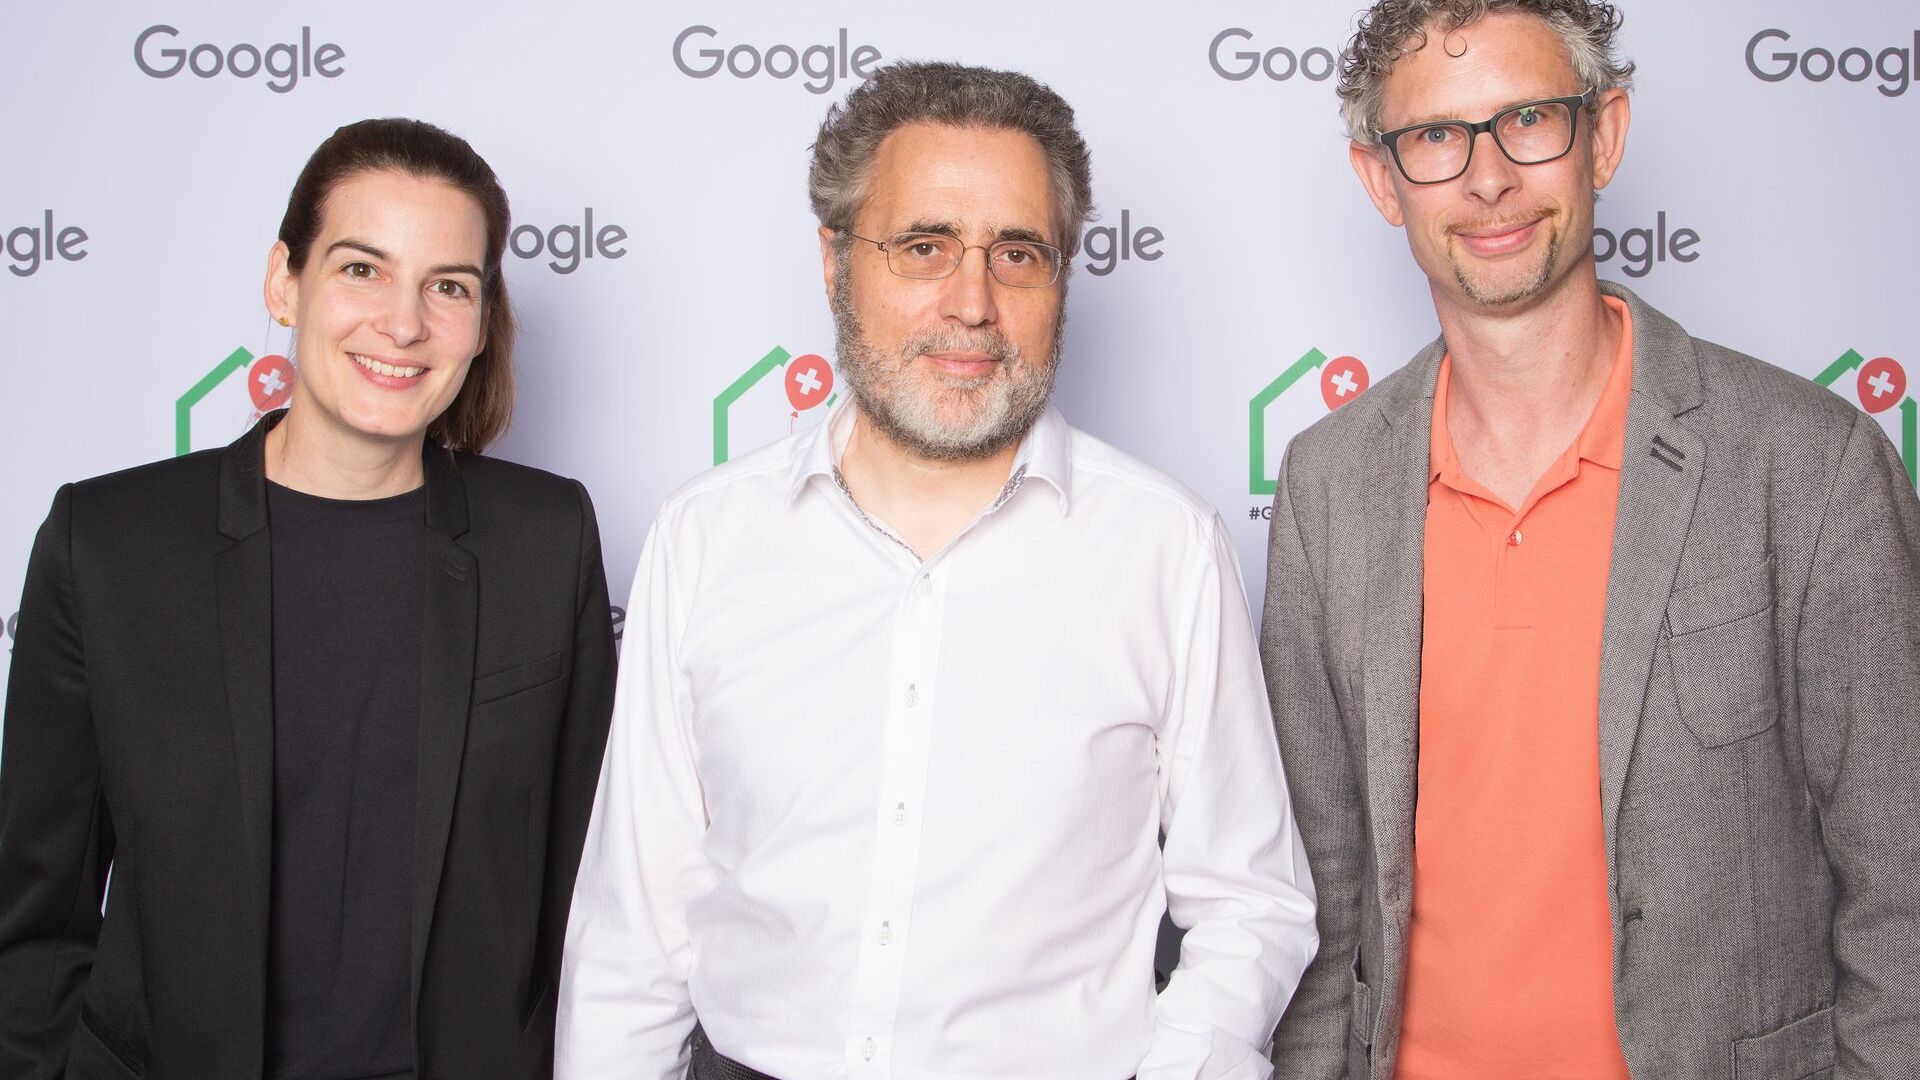 Urs Hölzle, Zëvendës President i Lartë i infrastrukturës teknike dhe Pia De Carli dhe Samuel Leiser, ekipi i medias në Zvicër, morën pjesë në hapjen zyrtare të Campus Europaallee të ri të Google në Cyrih më 27 qershor 2022